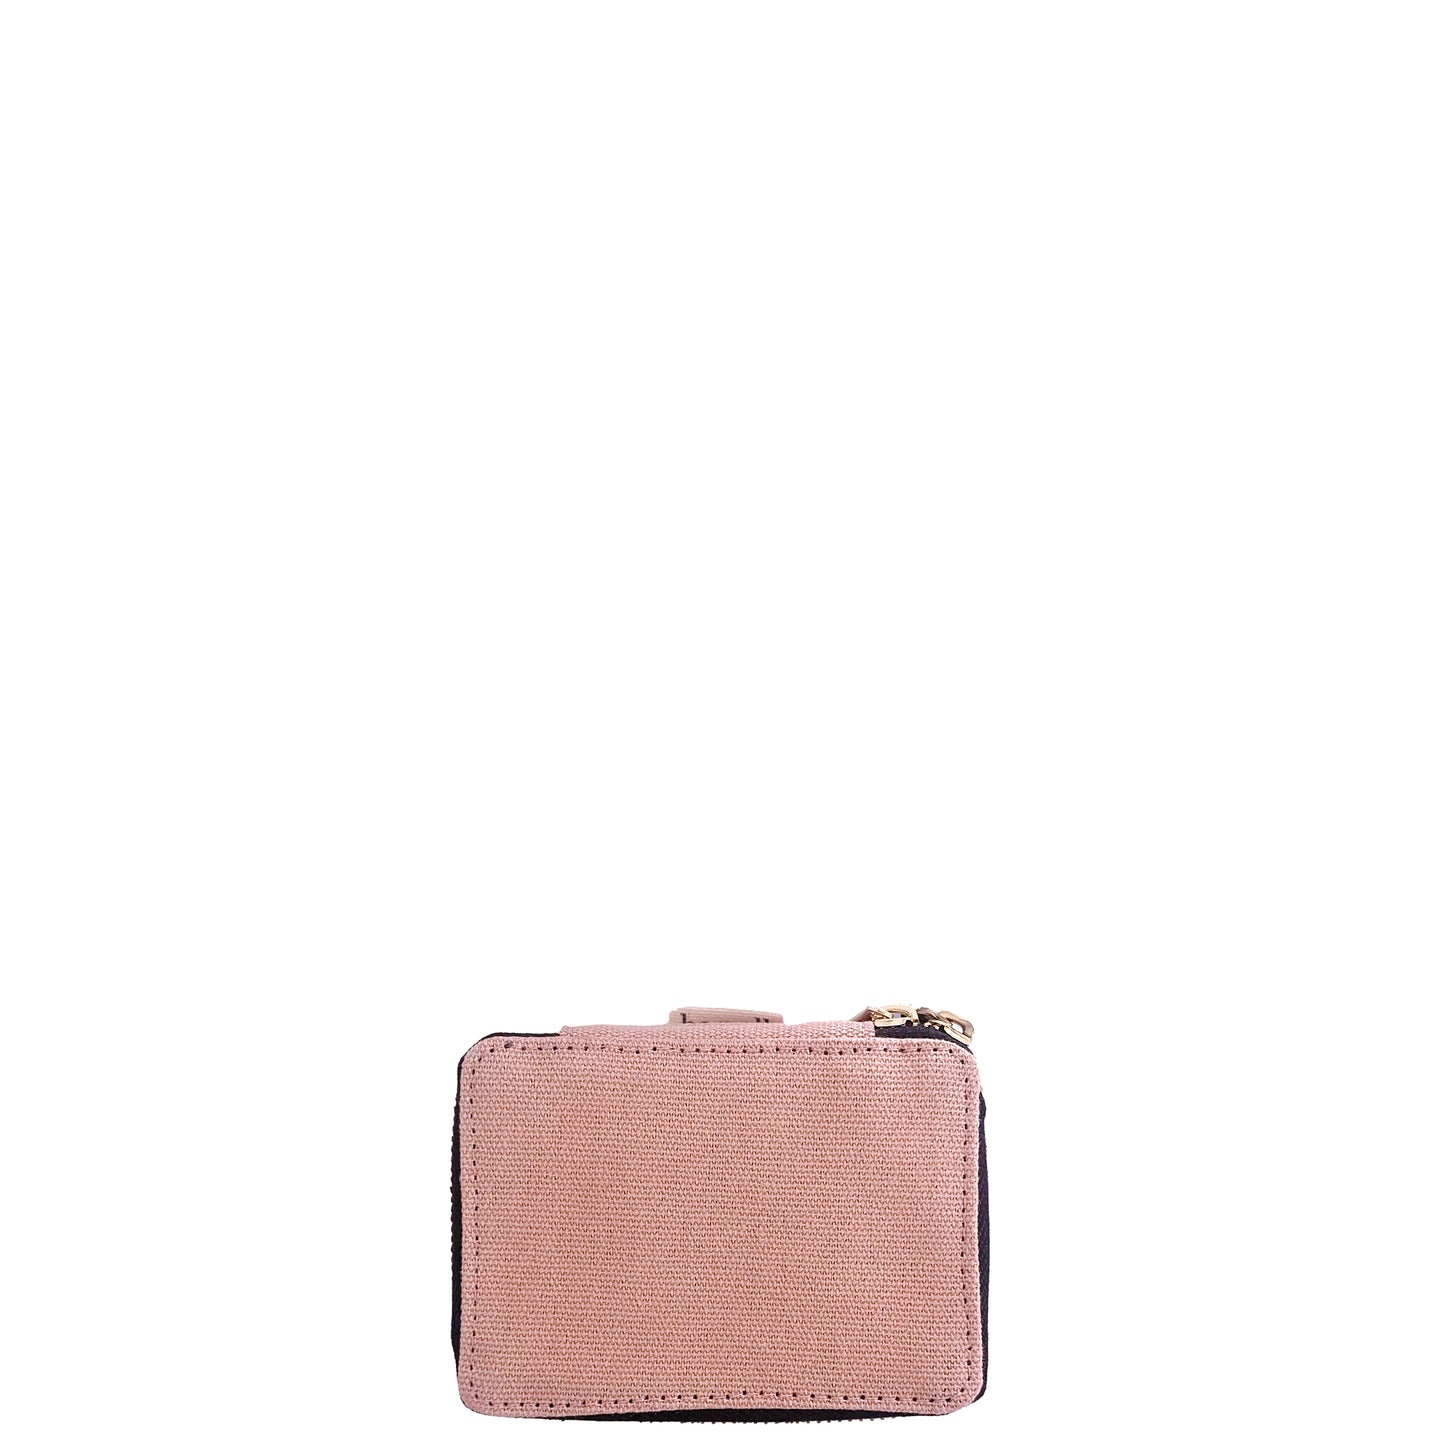 Boîte de Rangement pour Bijoux "Jewelry/Trinket Box", Rose Poudré | Bag-all France